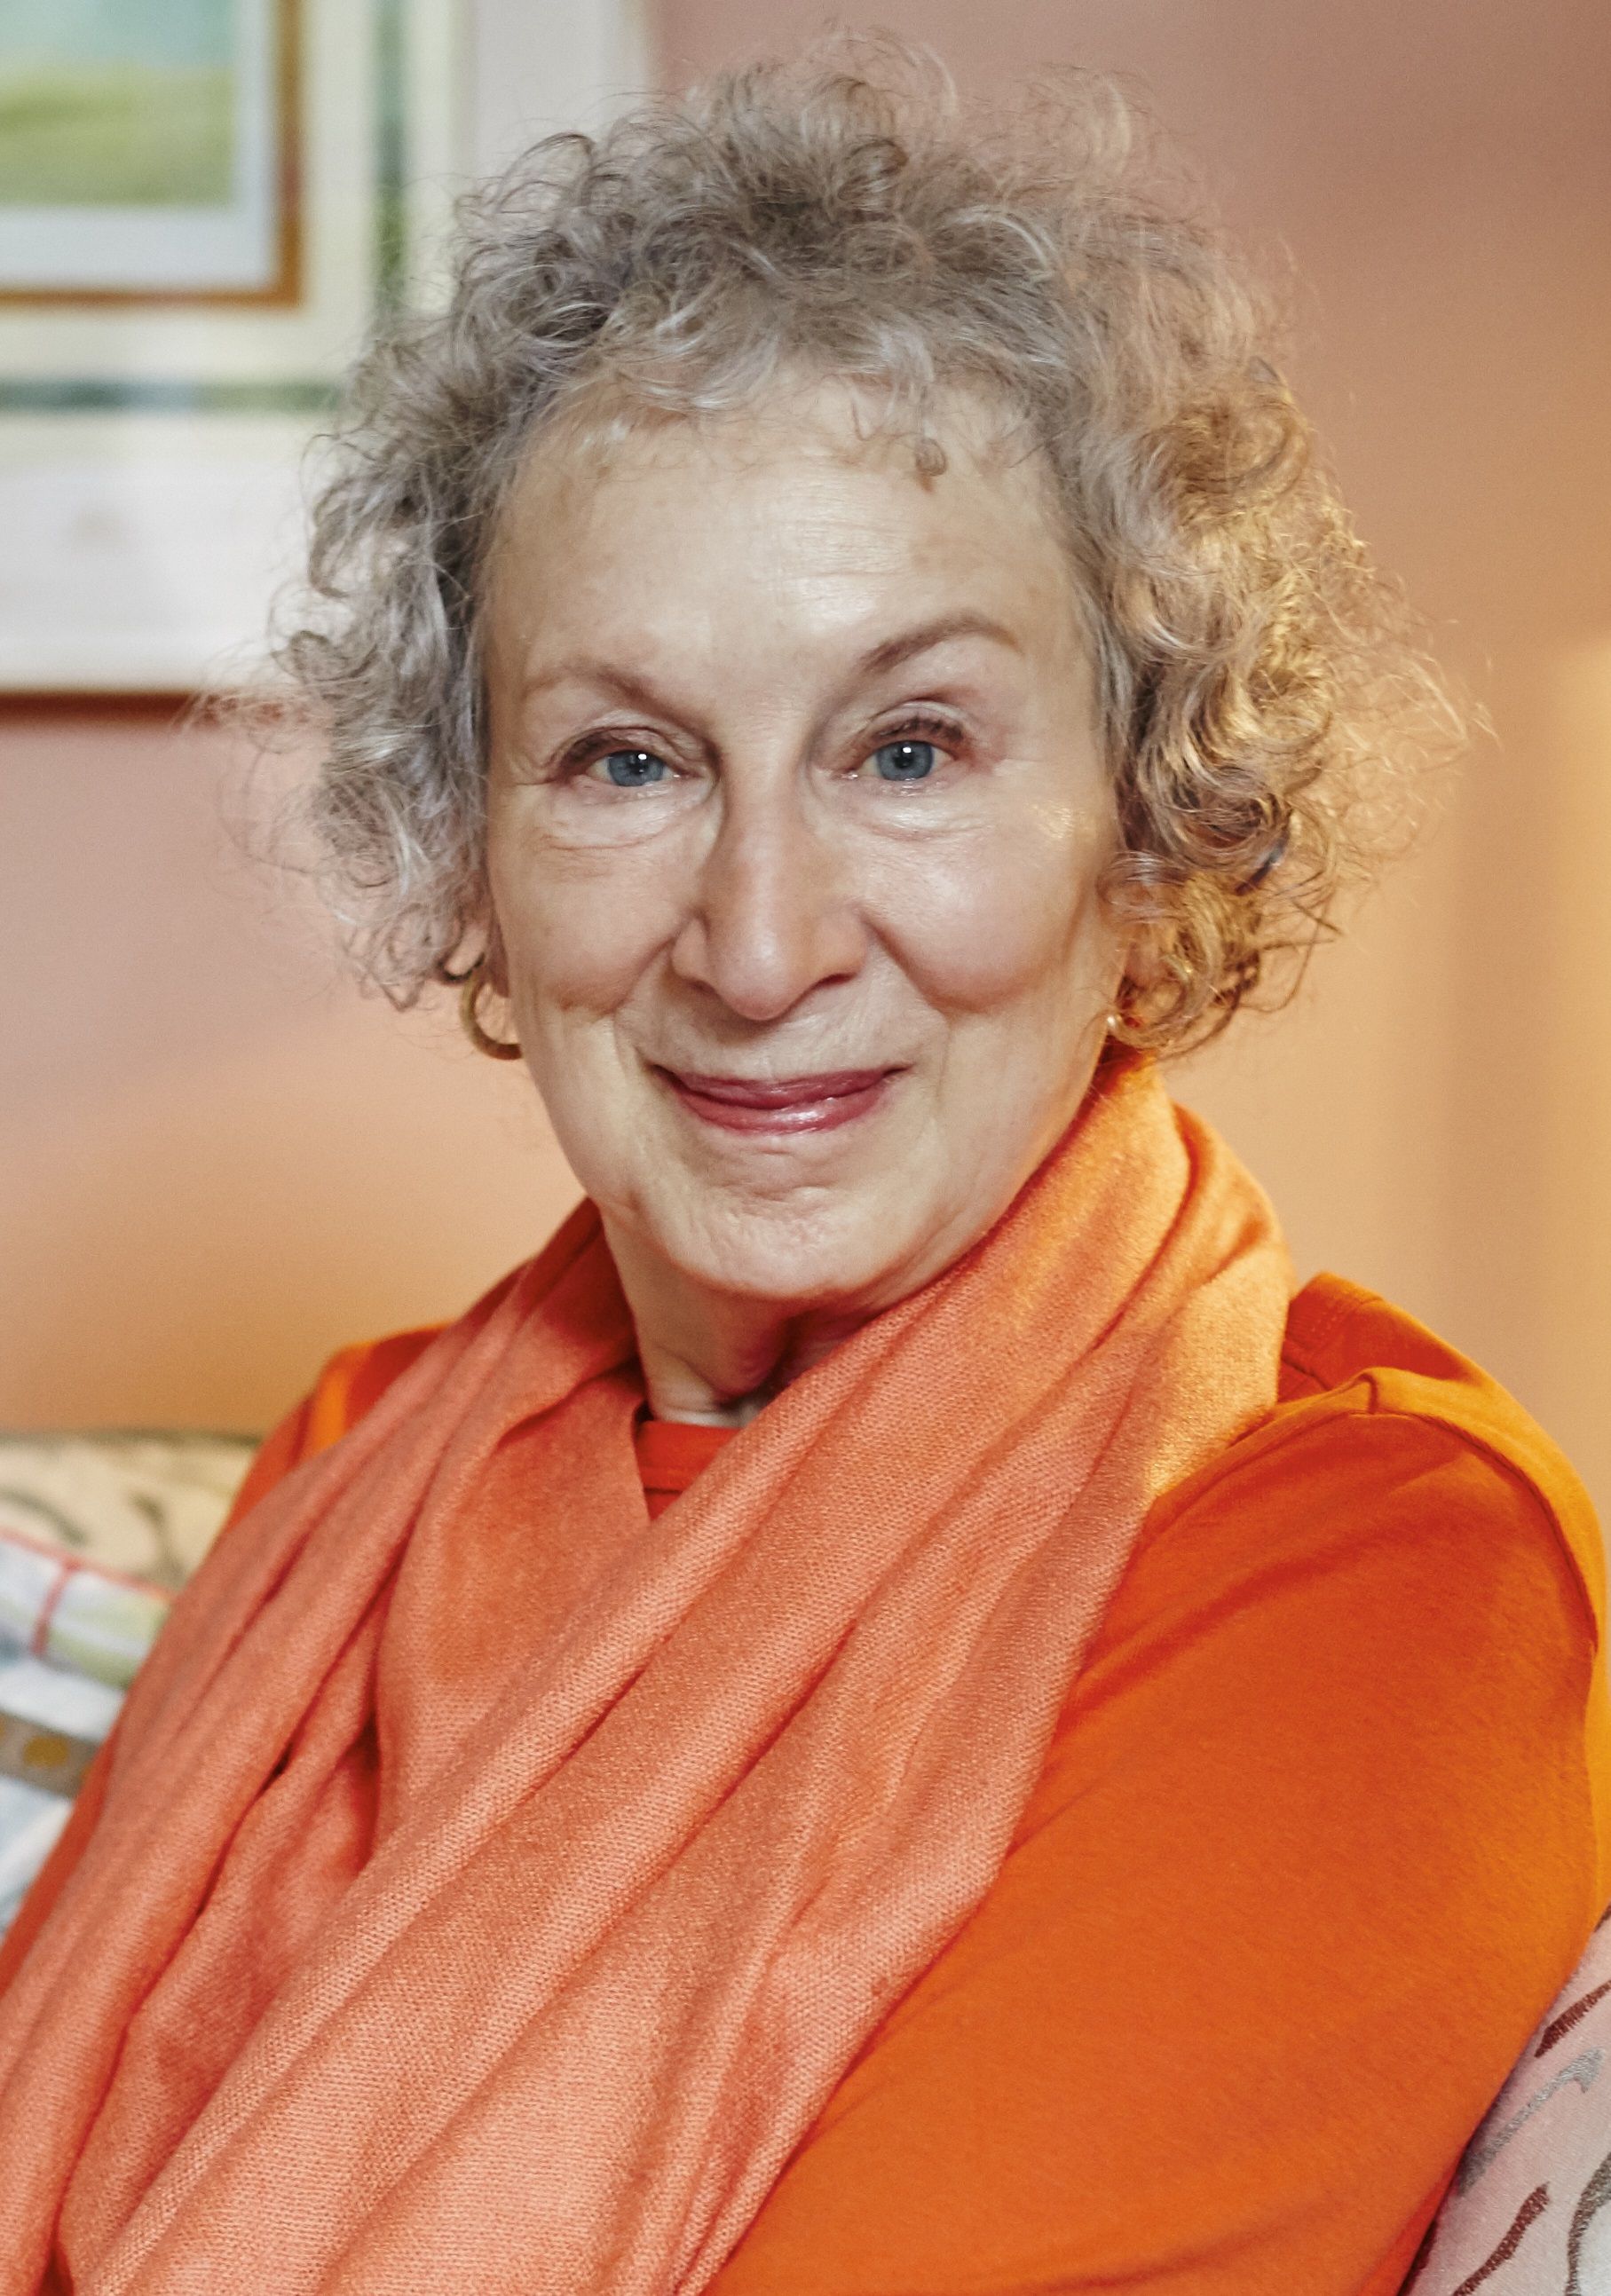 La novelista Margaret Atwood se muestra "esperanzada" en un futuro sin pandemia - Foto: Europa Press